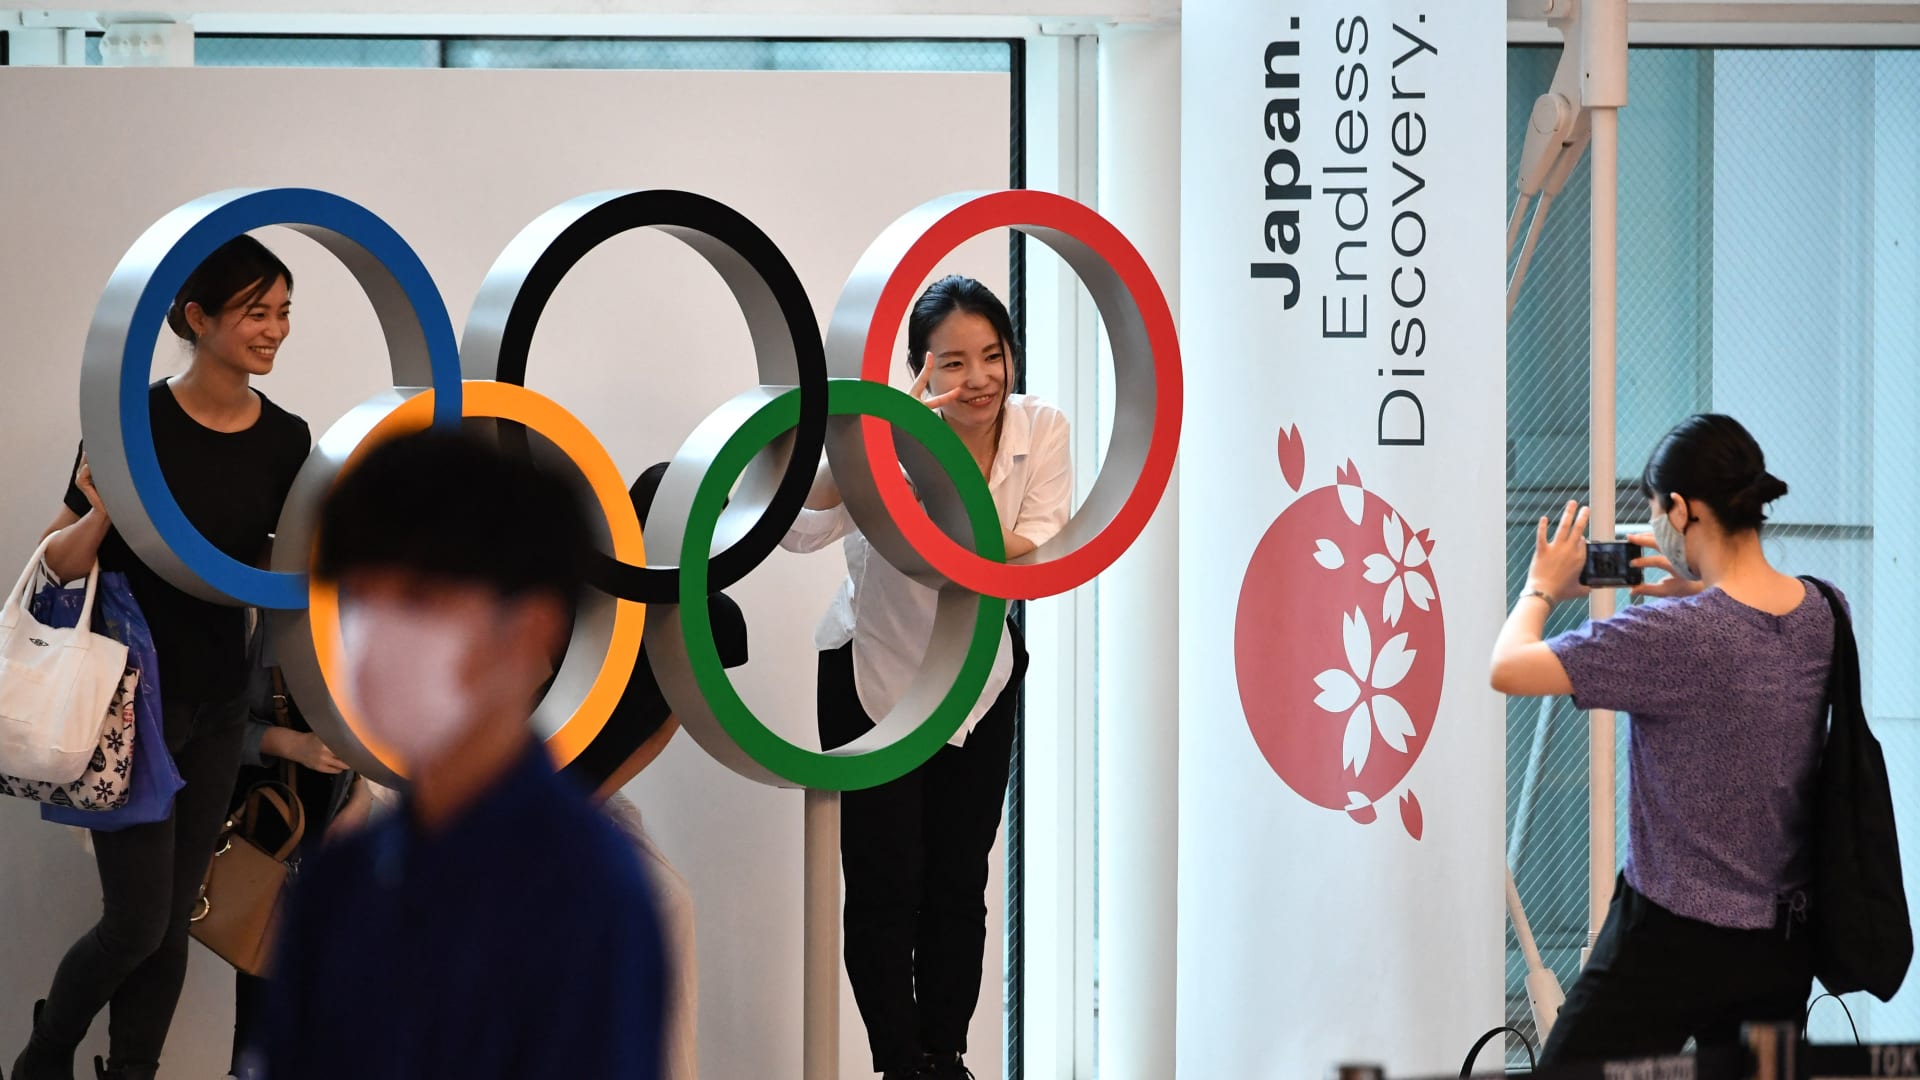 أولمبياد طوكيو: تنظيم الألعاب دون جمهور في العاصمة بعد وضعها قيد "طوارئ كورونا"